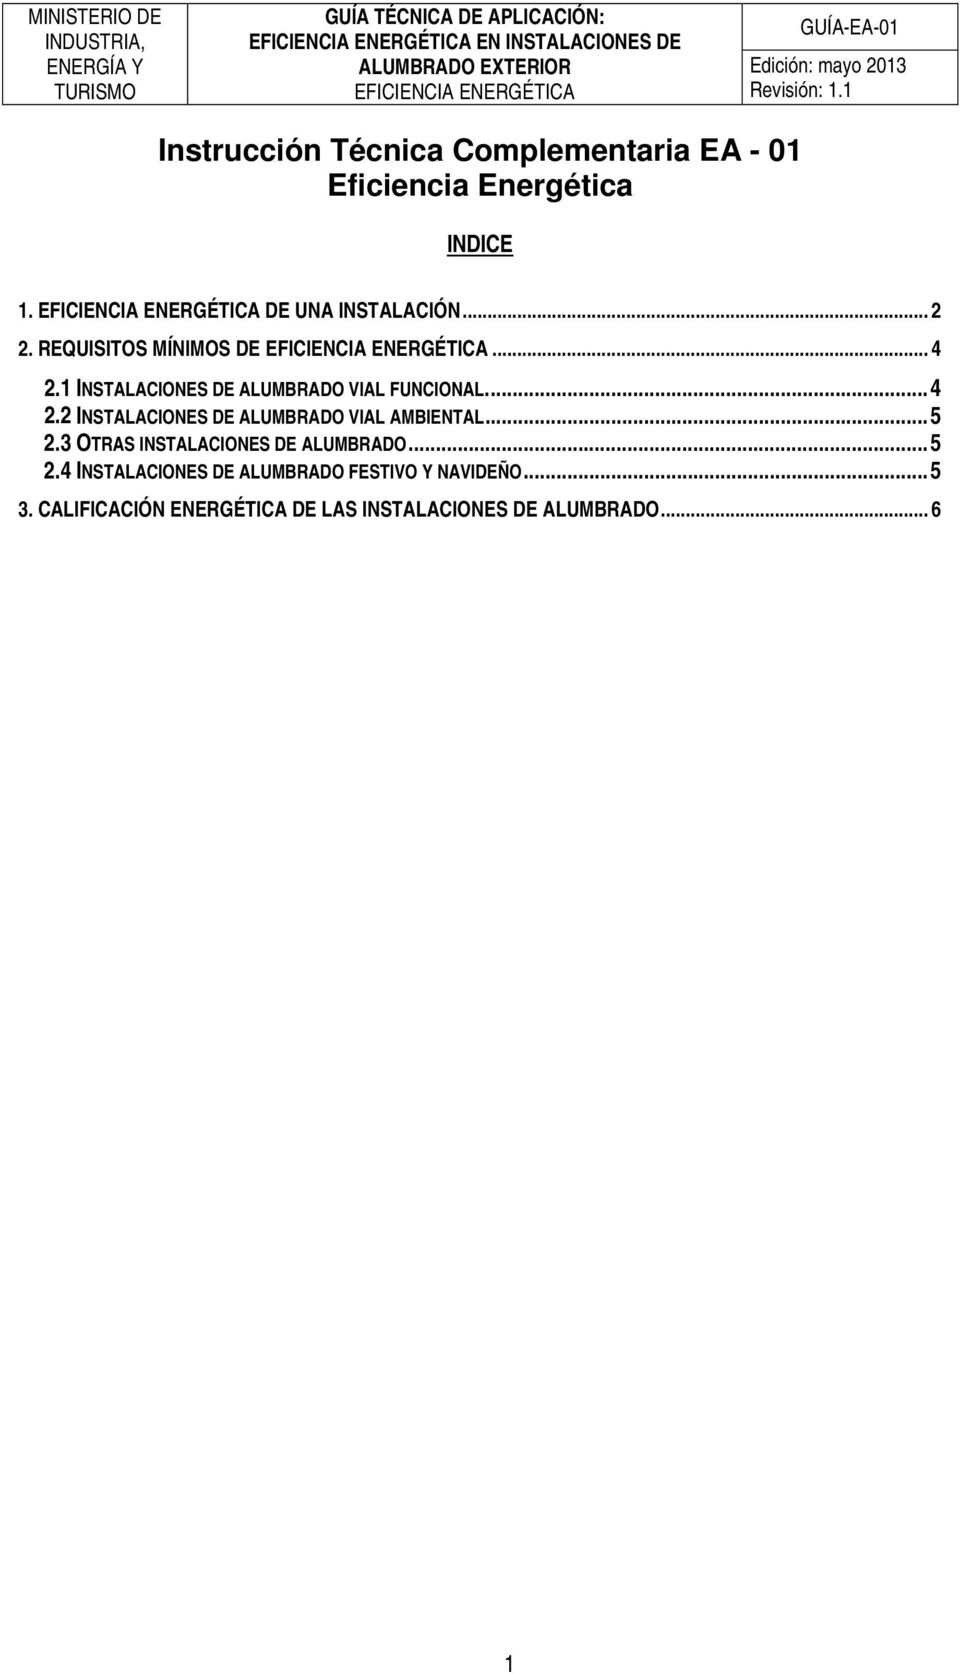 ... 4 2.2 INSTALACIONES DE ALUMBRADO VIAL AMBIENTAL... 5 2.